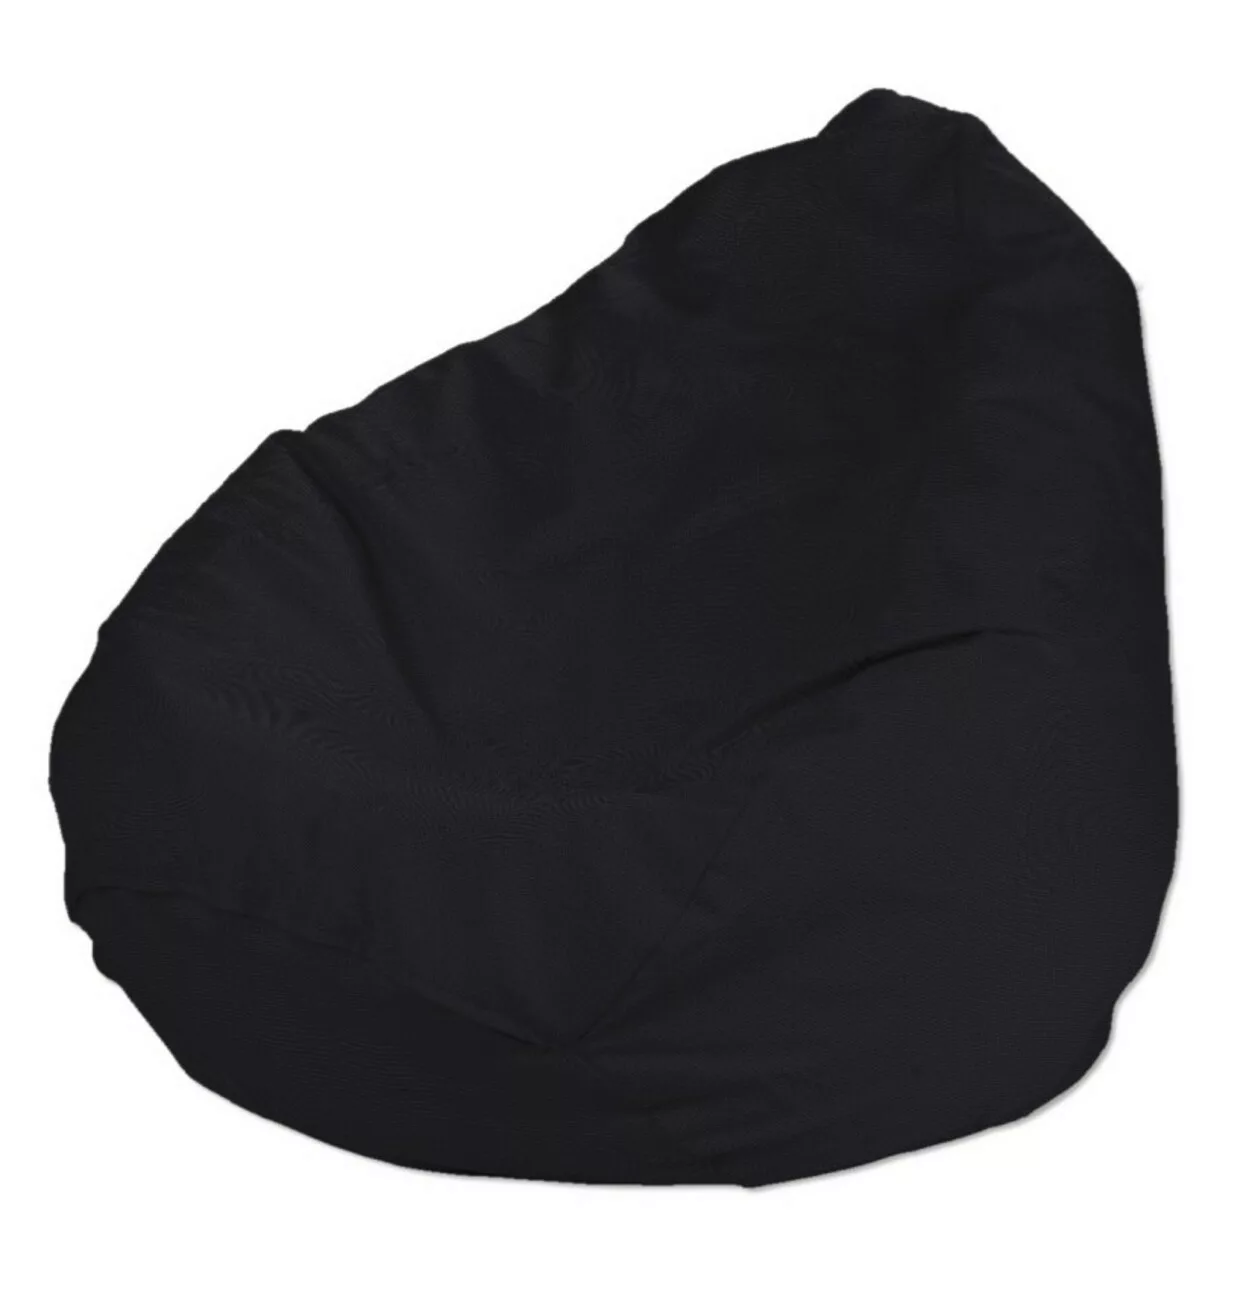 Bezug für Sitzsack, schwarz, Bezug für Sitzsack Ø60 x 105 cm, Etna (705-00) günstig online kaufen